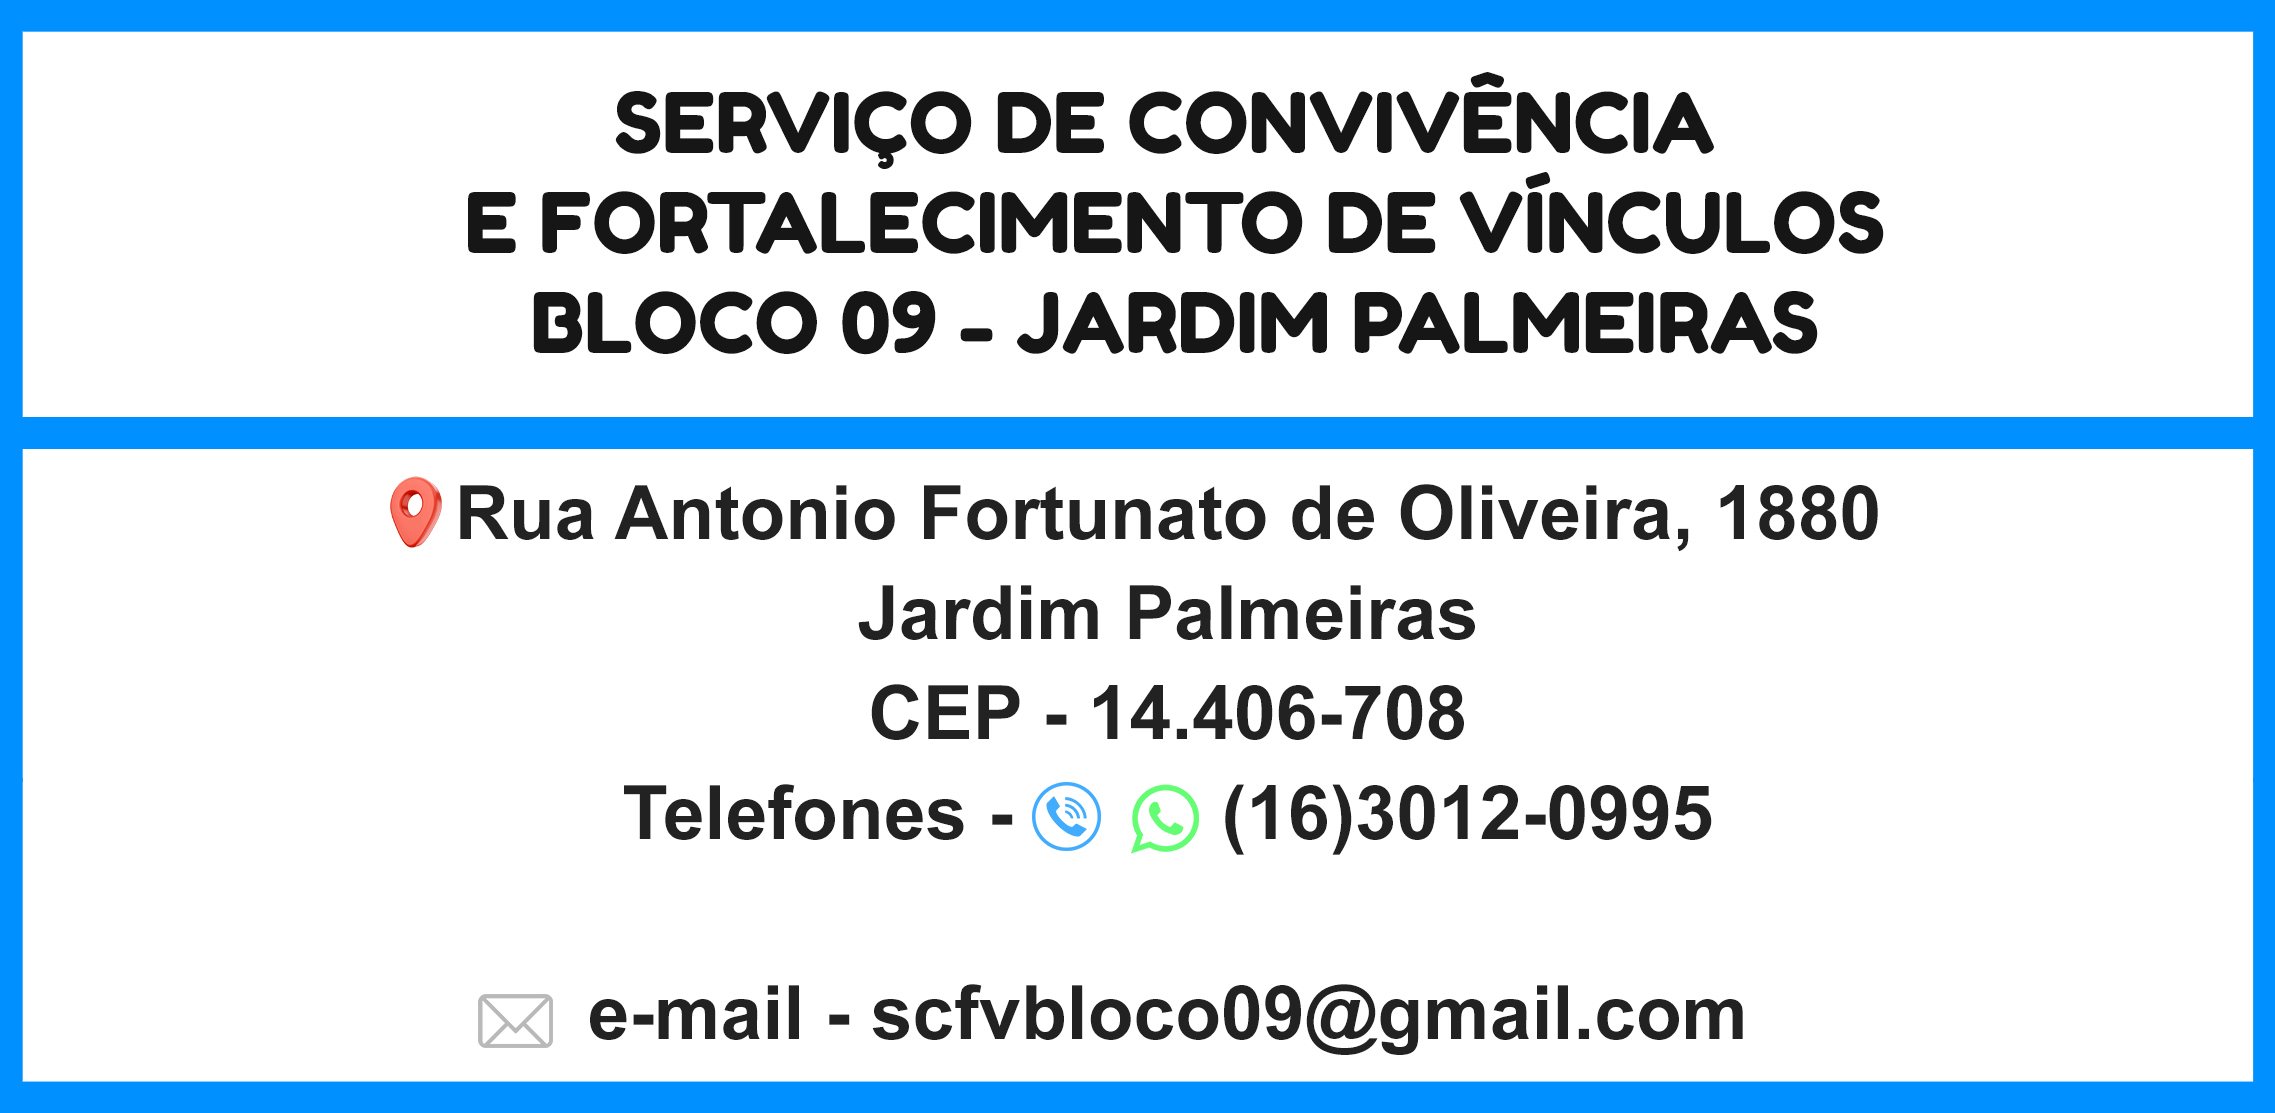 SCFV - Bloco 09 - Palmeiras